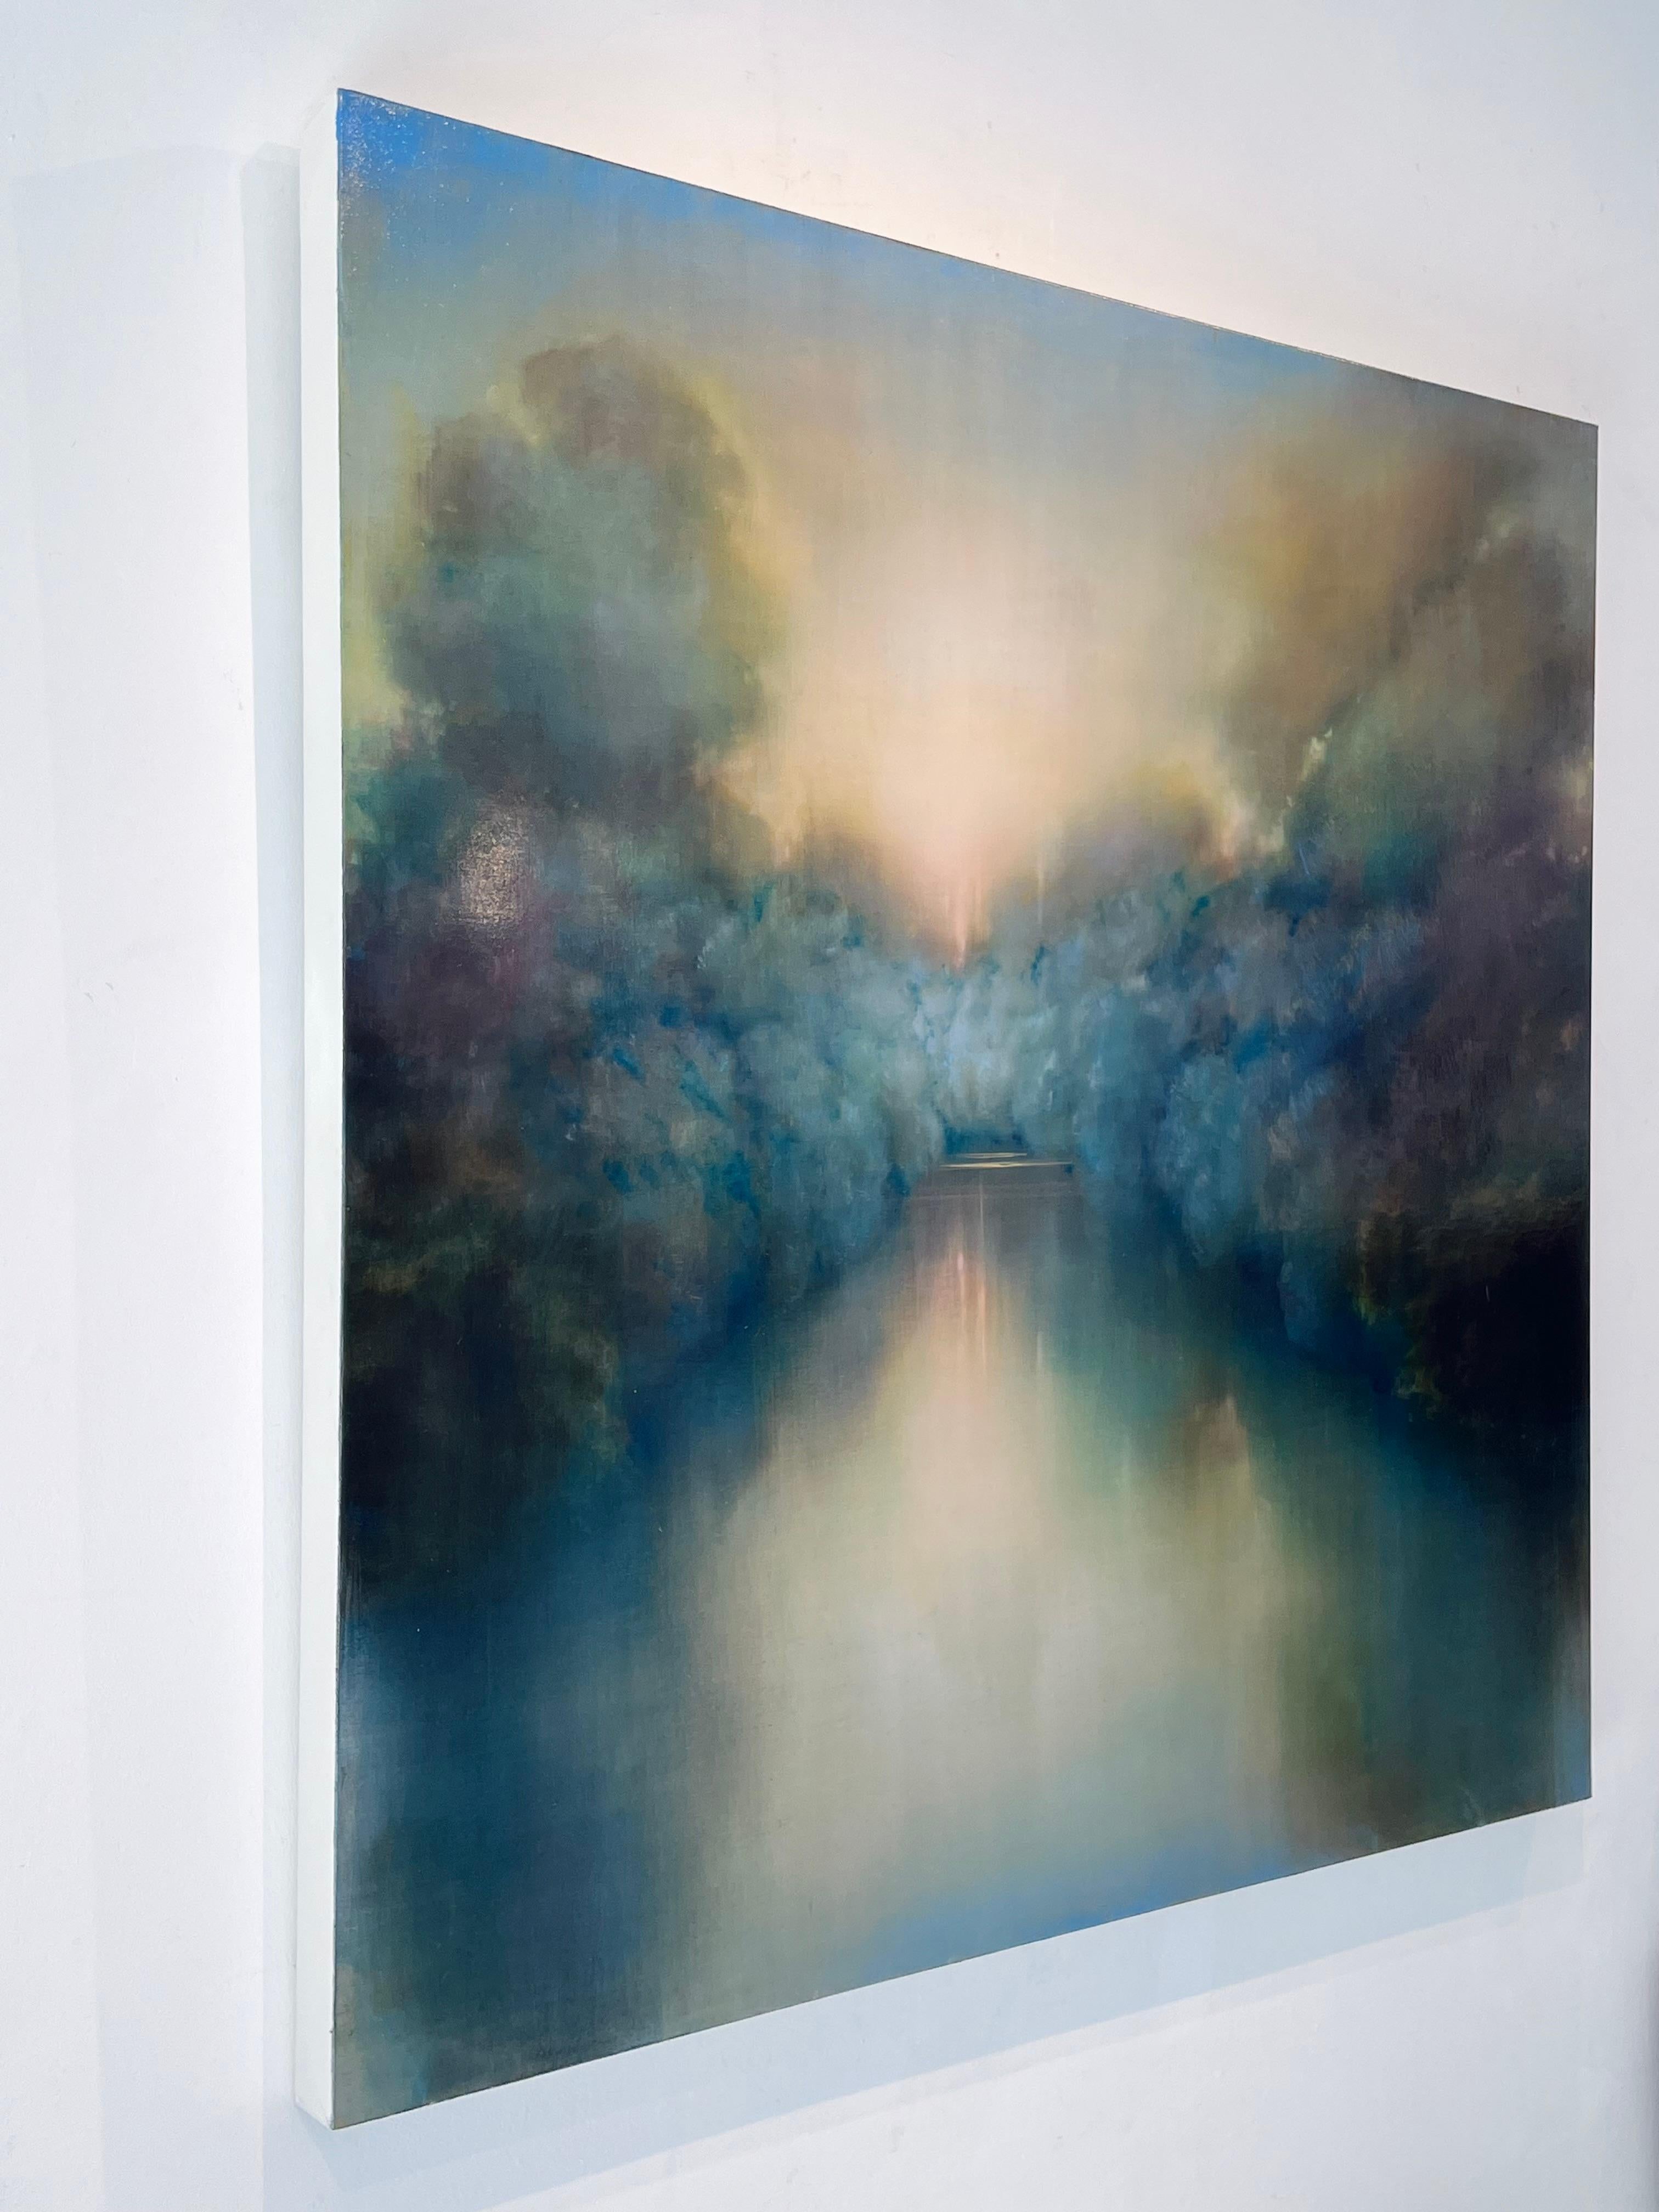 Listening Landscape-original abstrakte Landschaft-Wasserlandschaft-Gemälde-zeitgenössisch (Abstrakter Expressionismus), Painting, von Louse Fairchild